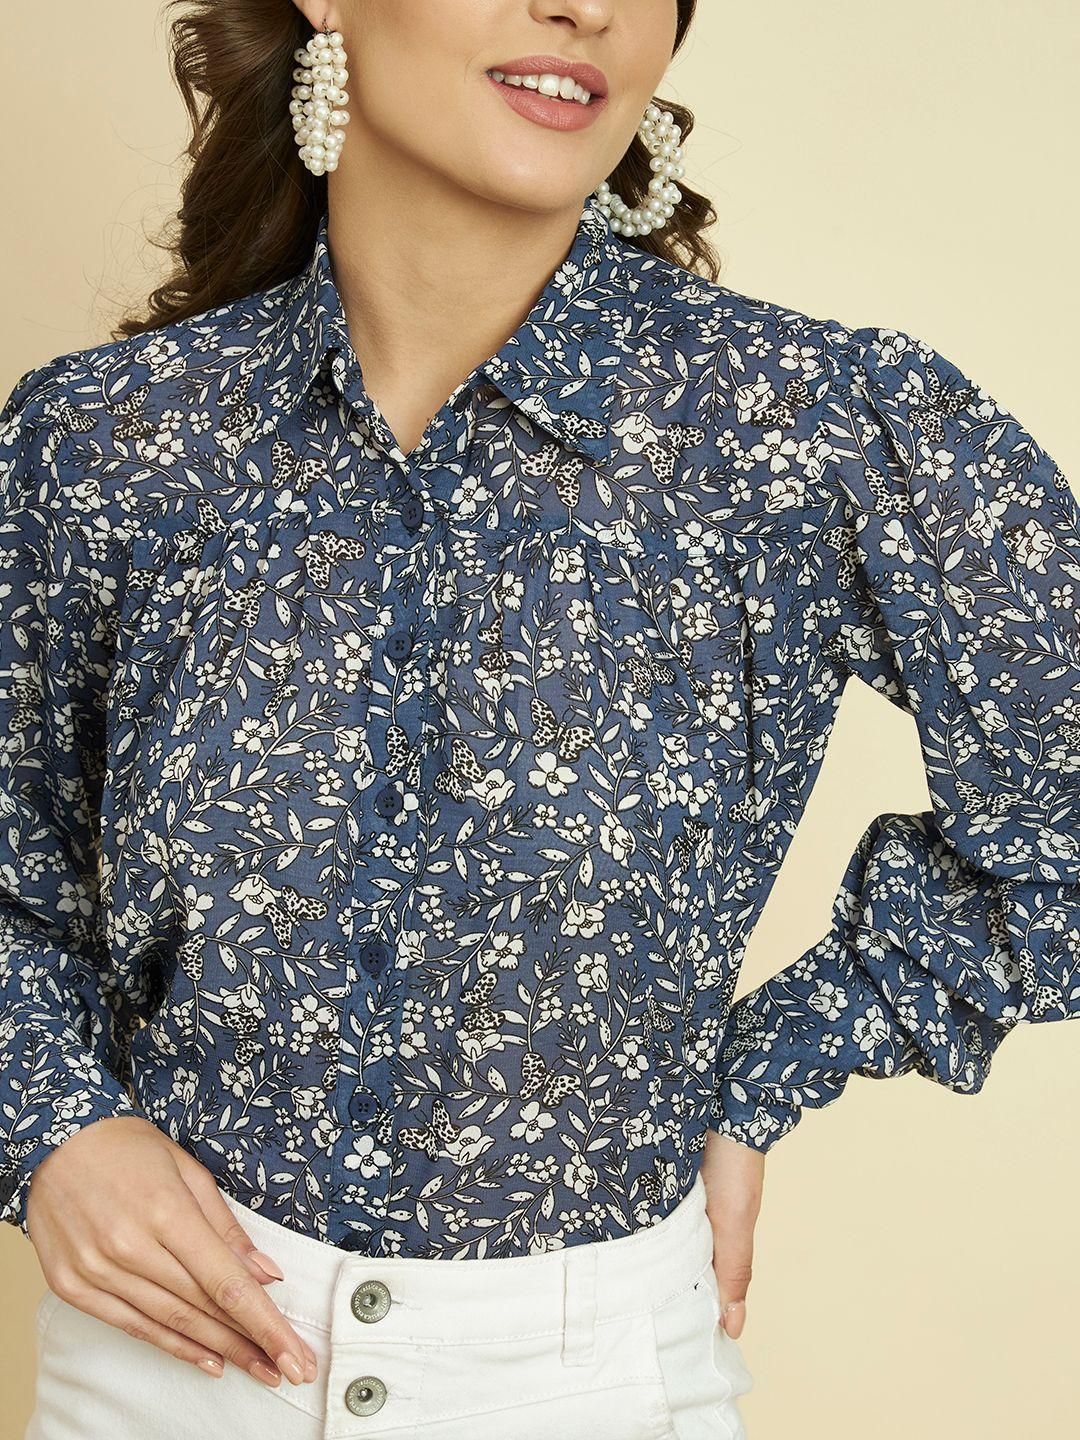 TRRENDARREST Blue Floral Printed Shirt